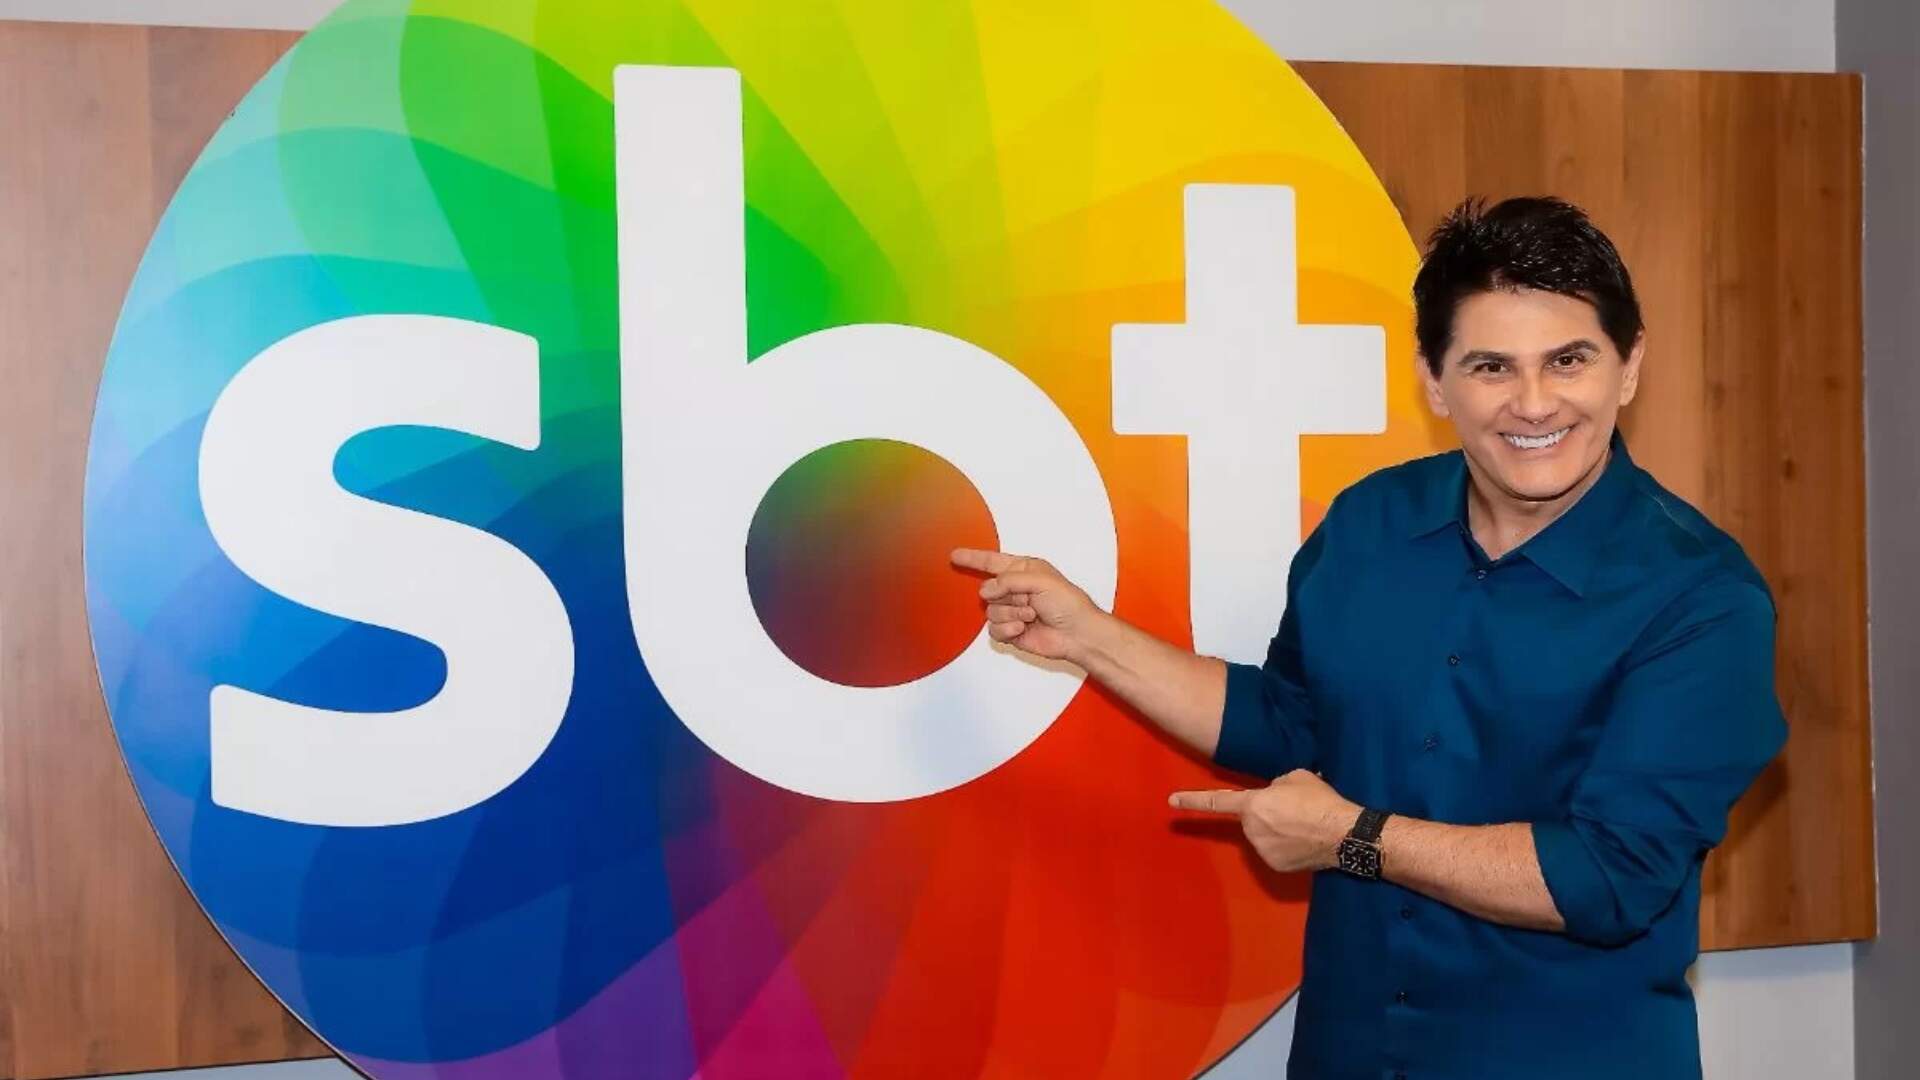 Dez anos depois, Cesar Filho volta ao SBT e vai comandar o principal jornal da emissora: “Eu tenho uma aliança”